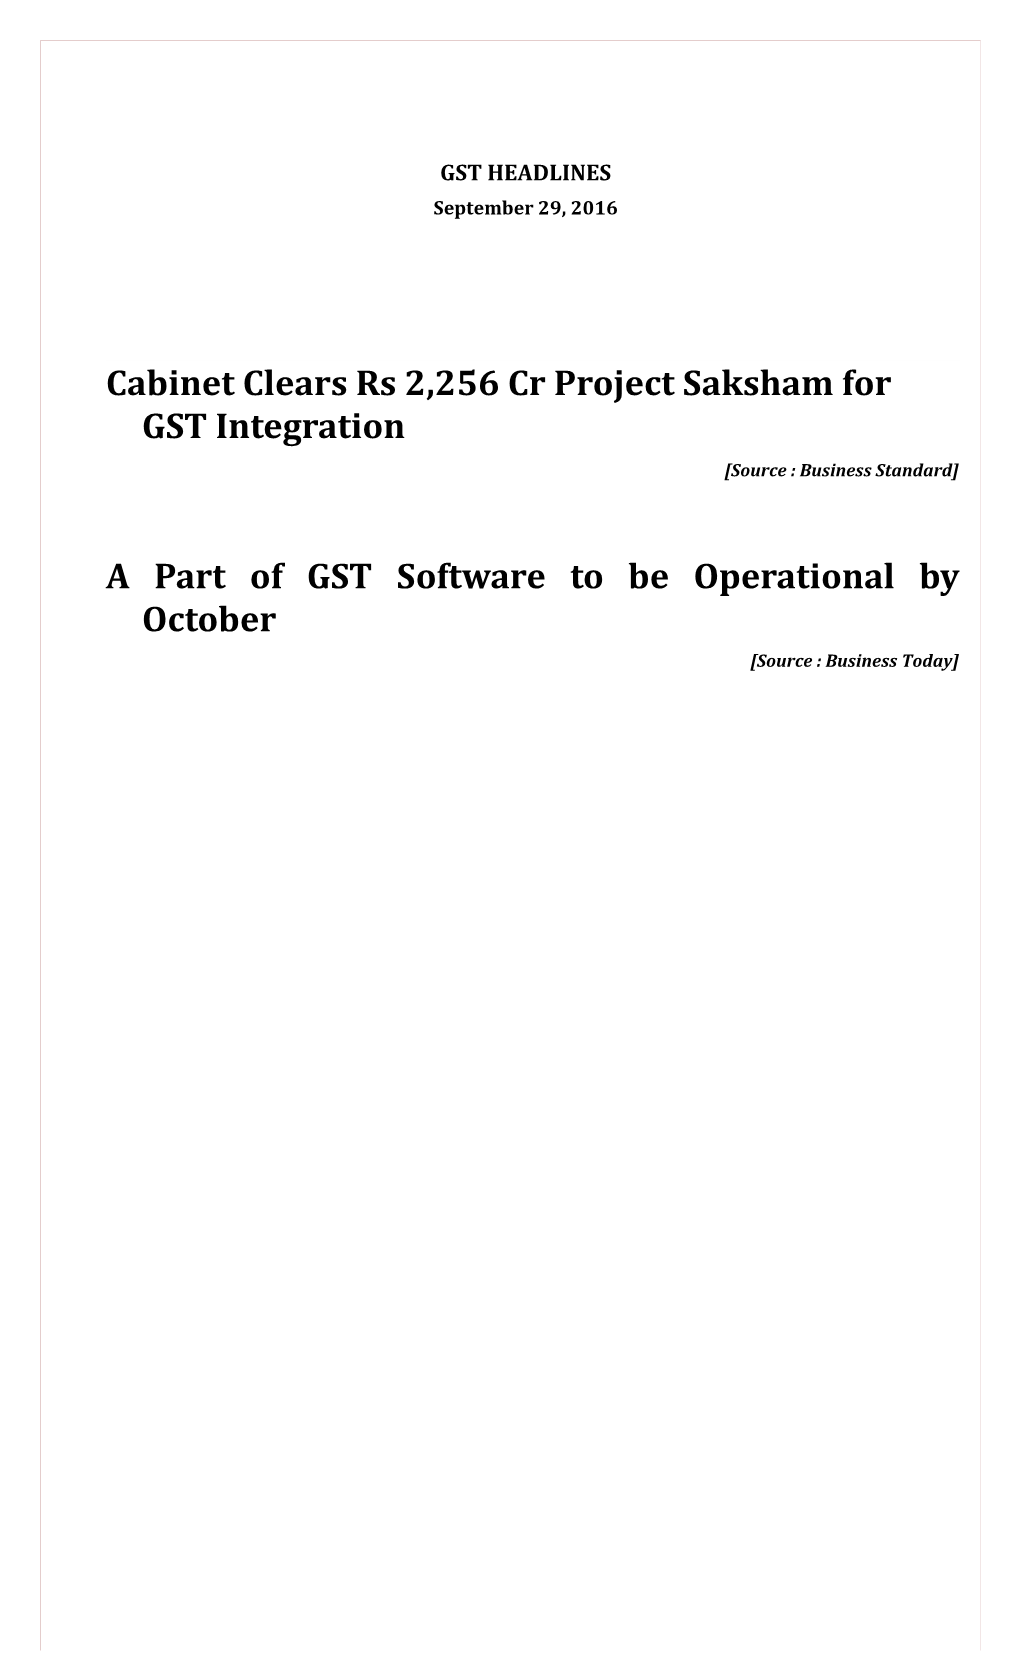 Cabinet Clears Rs 2,256 Cr Project Saksham for GST Integration